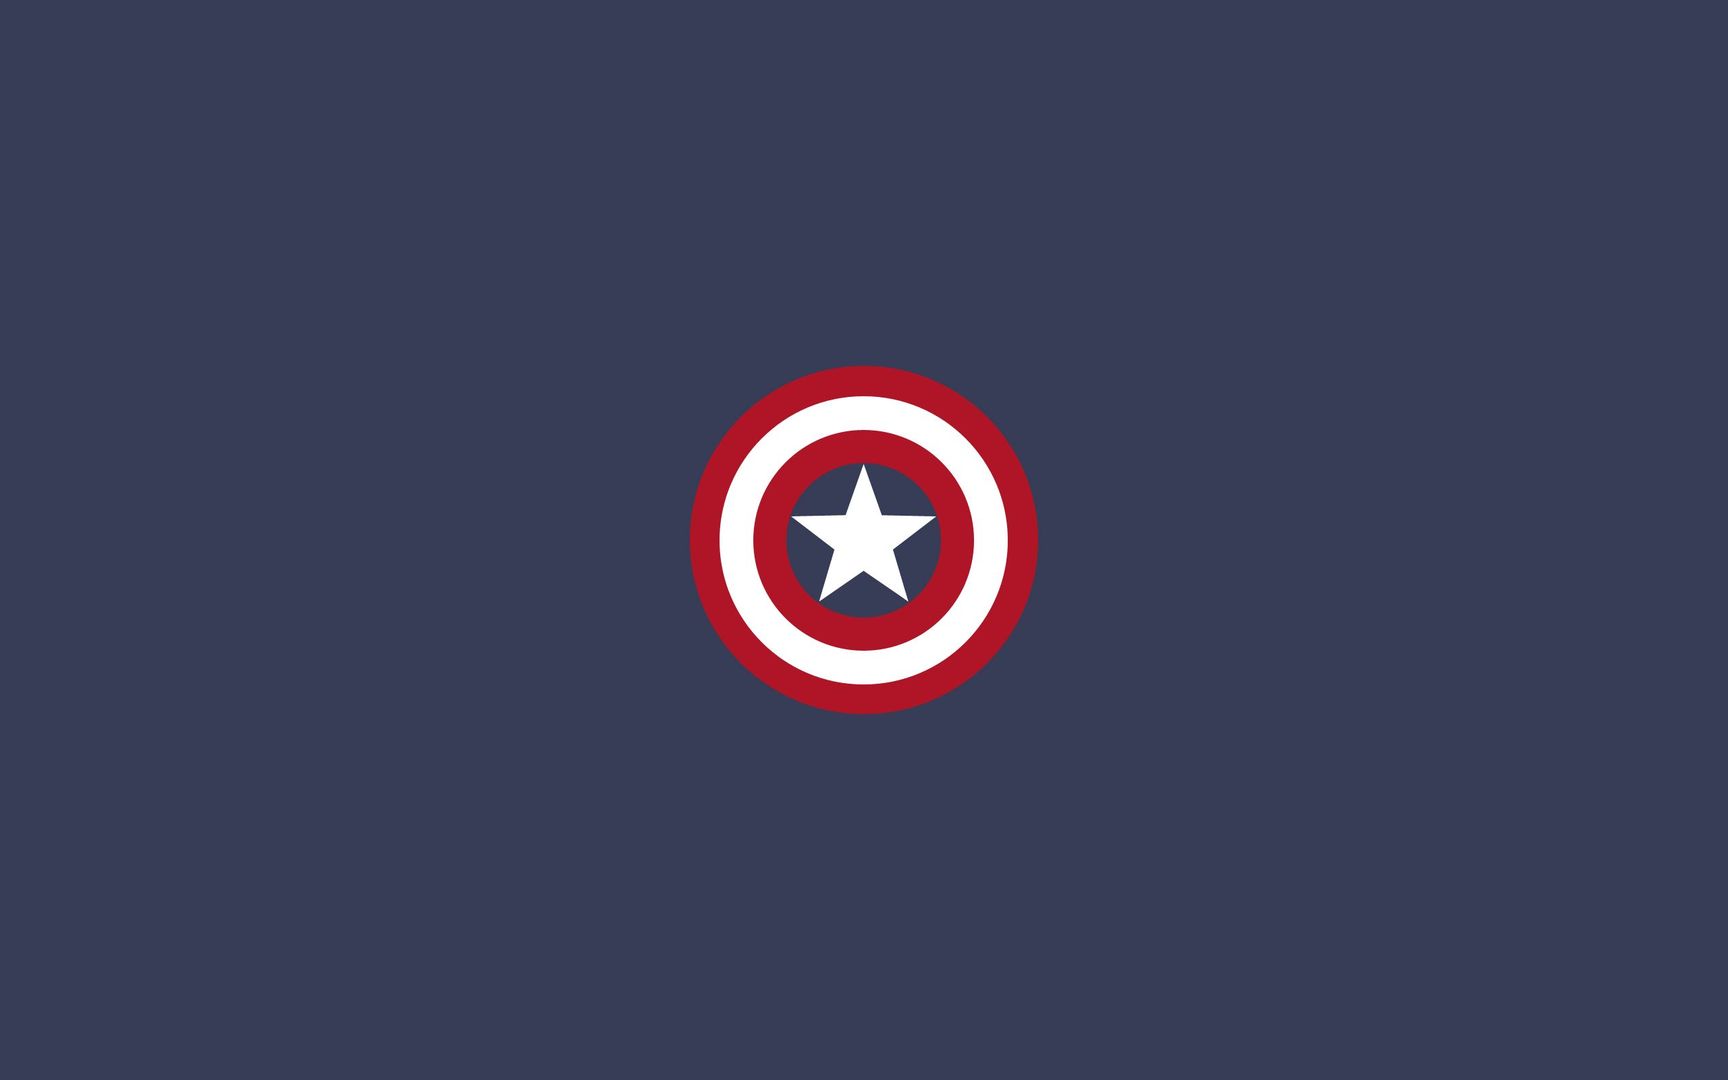 Download Captain America shield wallpaper